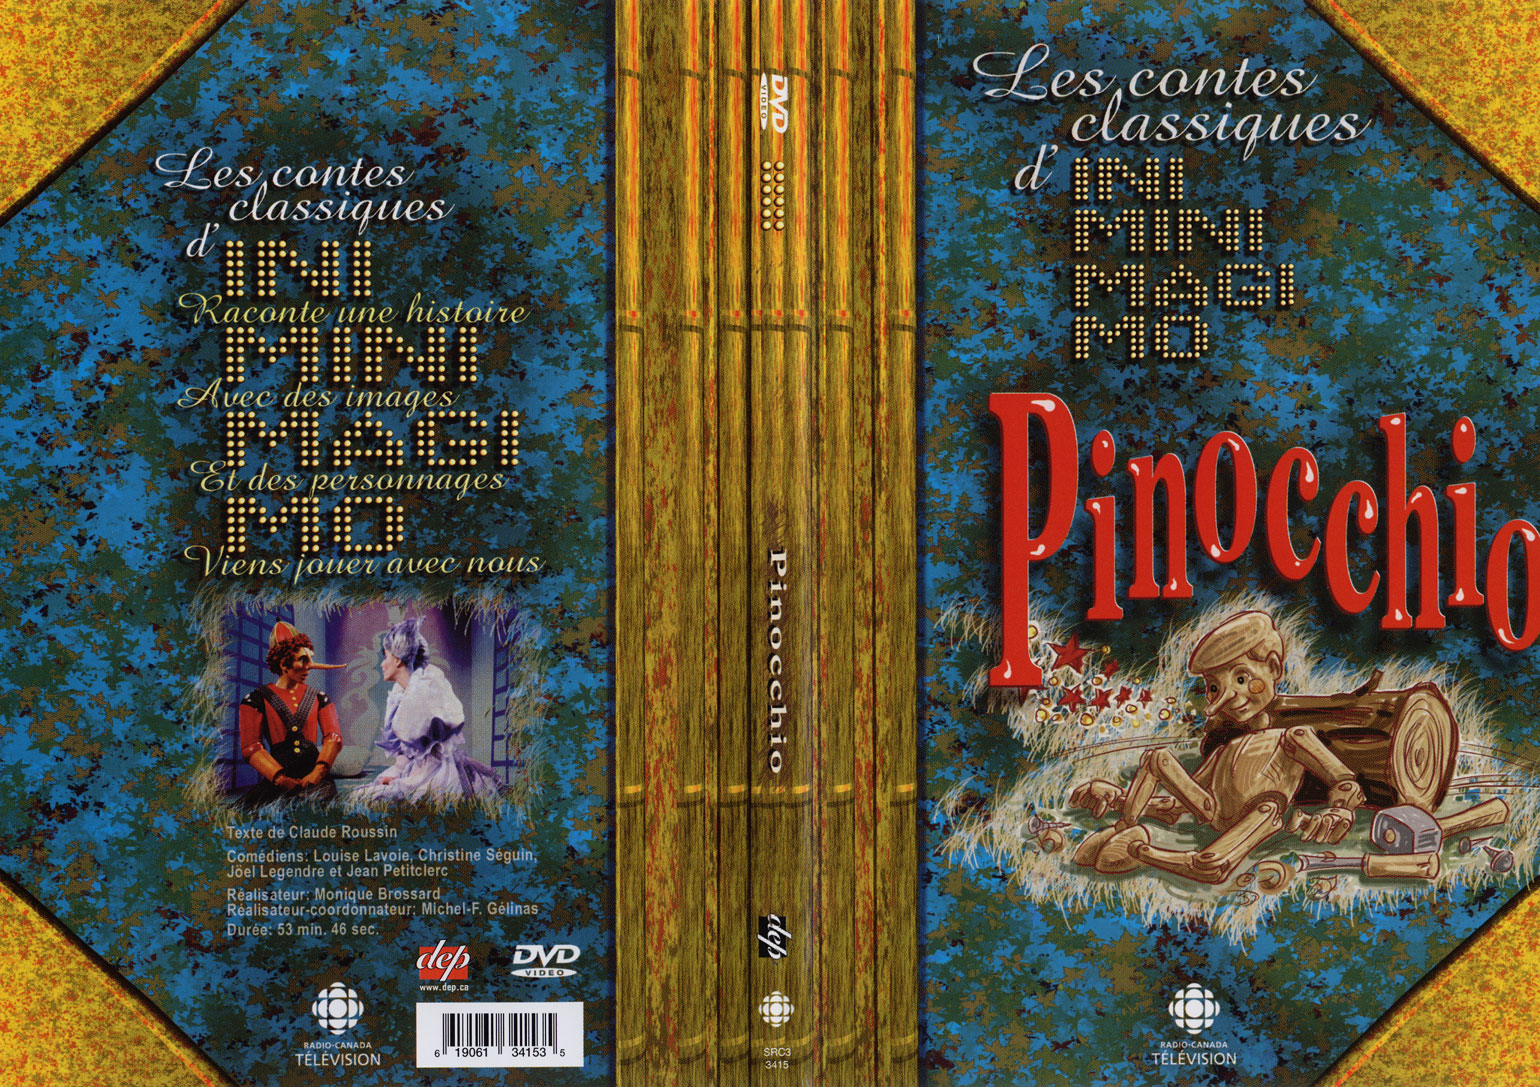 Jaquette DVD IniMiniMagiMo - Pinocchio